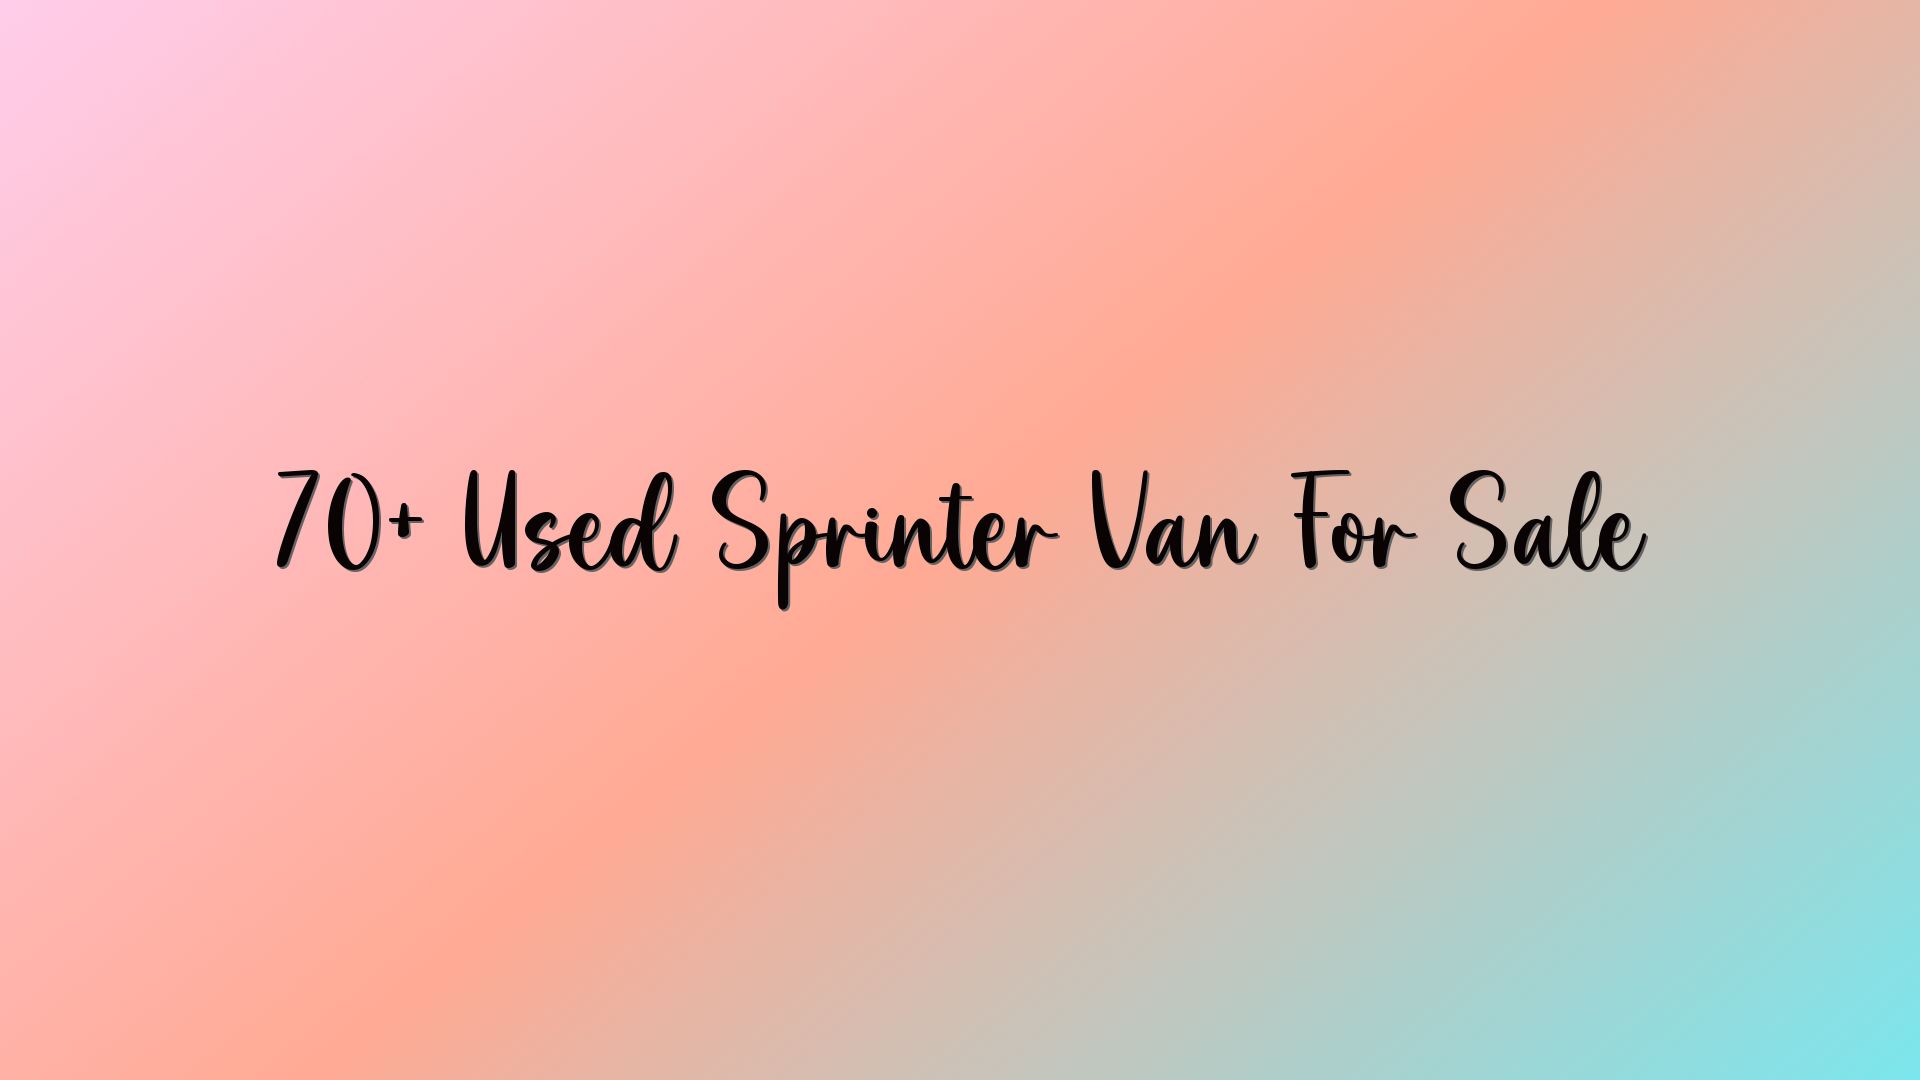 70+ Used Sprinter Van For Sale